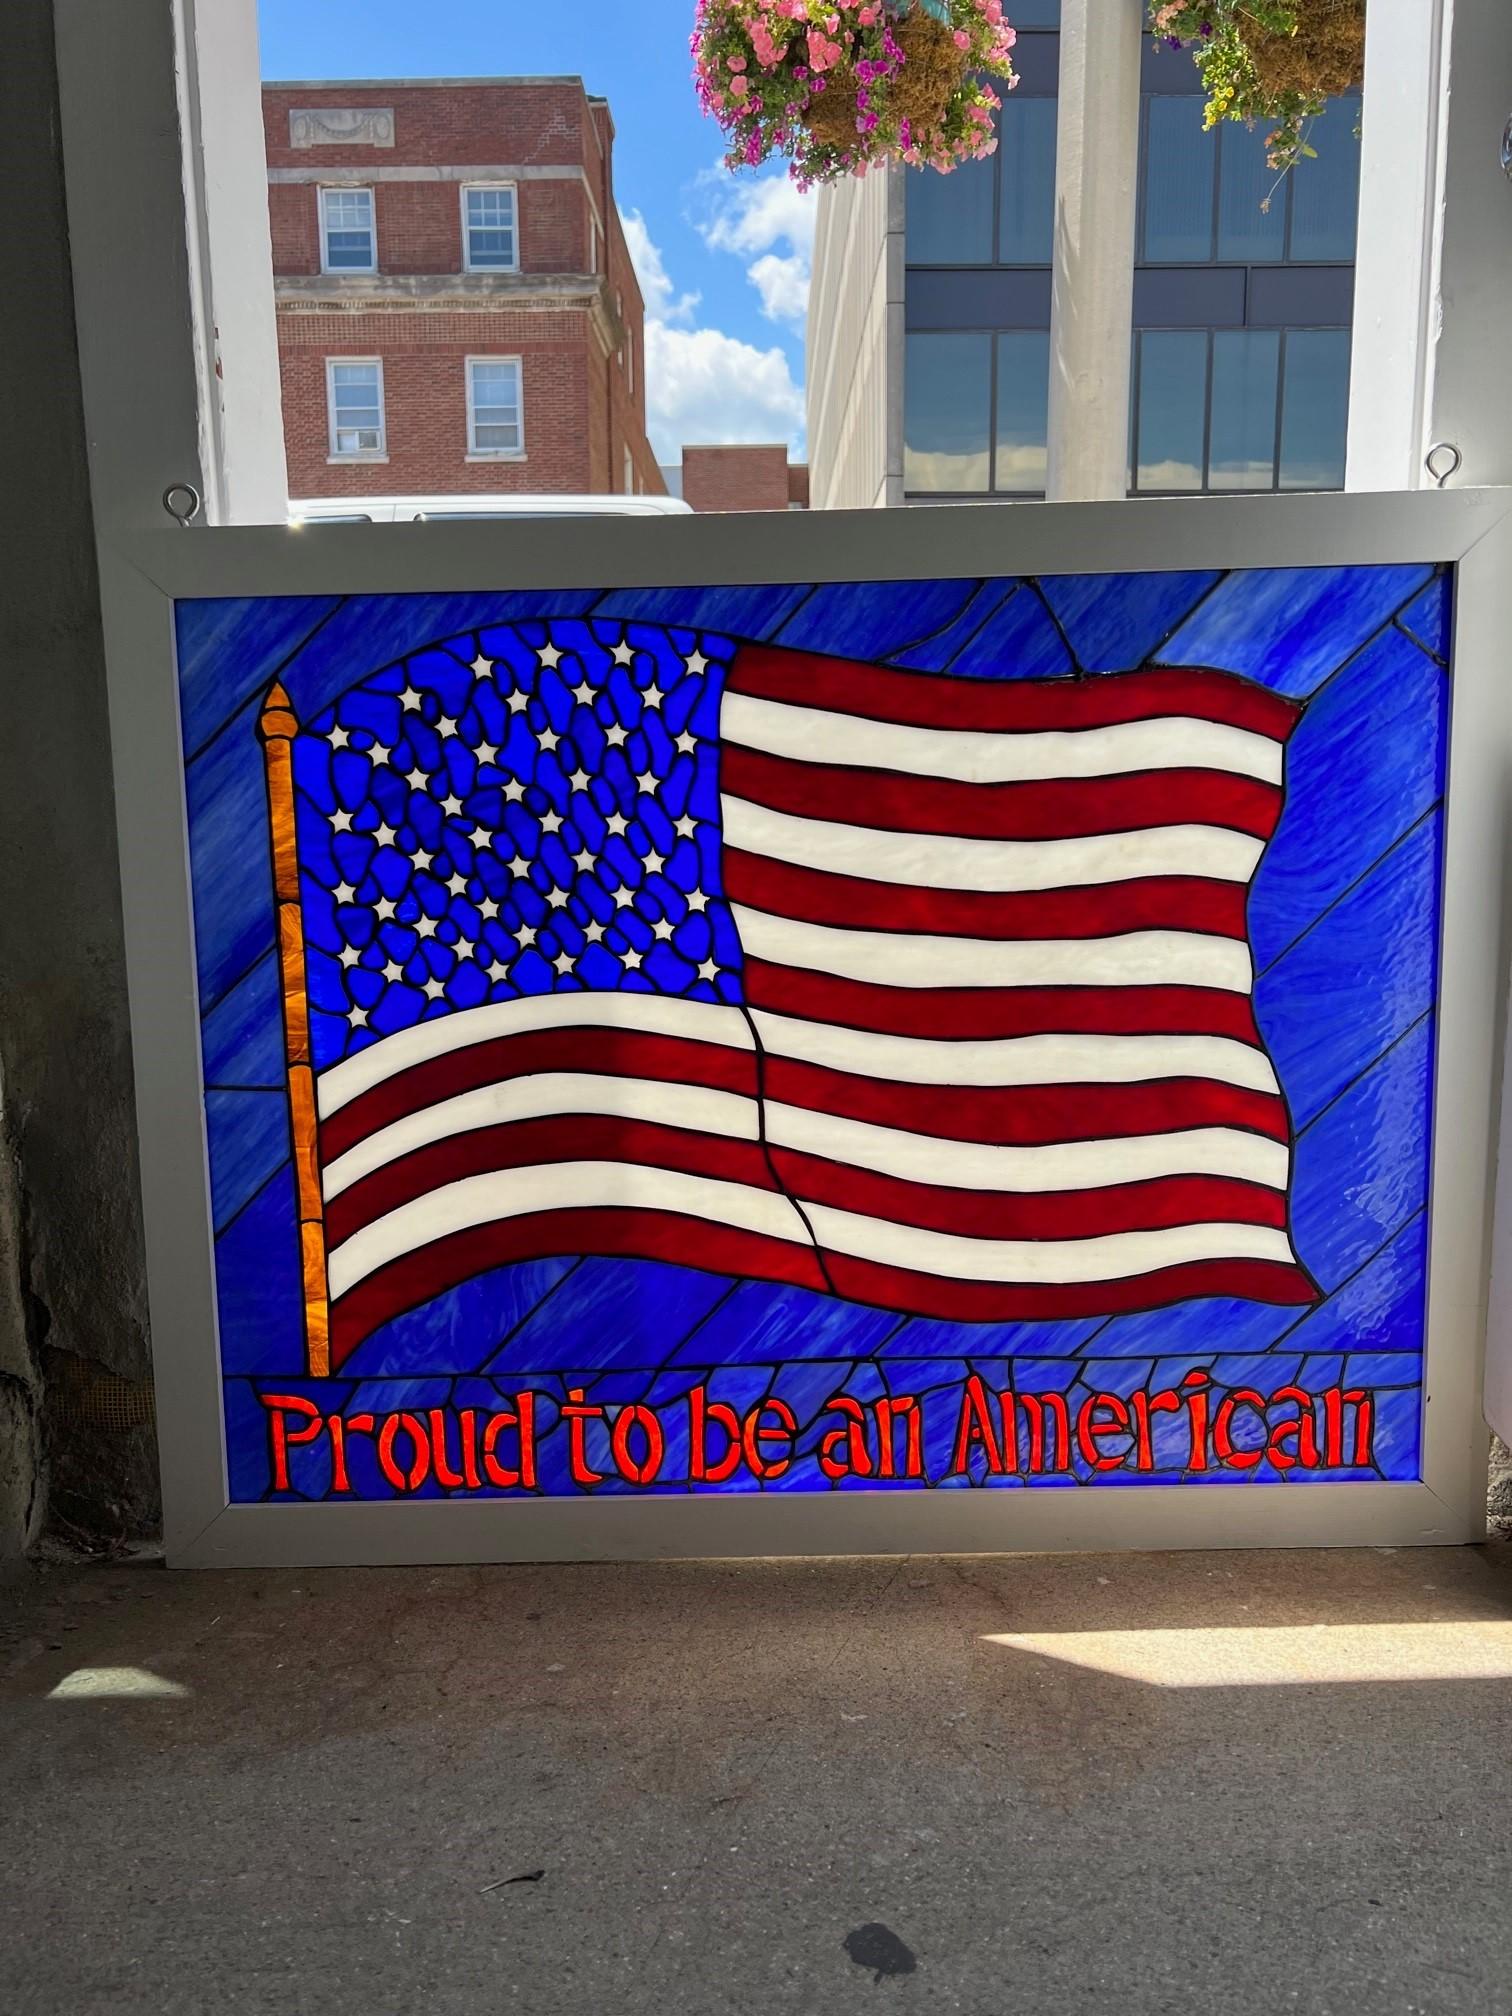 Magnifique vitrail d'un drapeau américain avec Proud to be an American dans un cadre en bois peint en blanc. Cette fenêtre n'est pas ancienne, elle a été réalisée en 2001, après le 11 septembre, pour montrer le soutien aux États-Unis. Il est en très